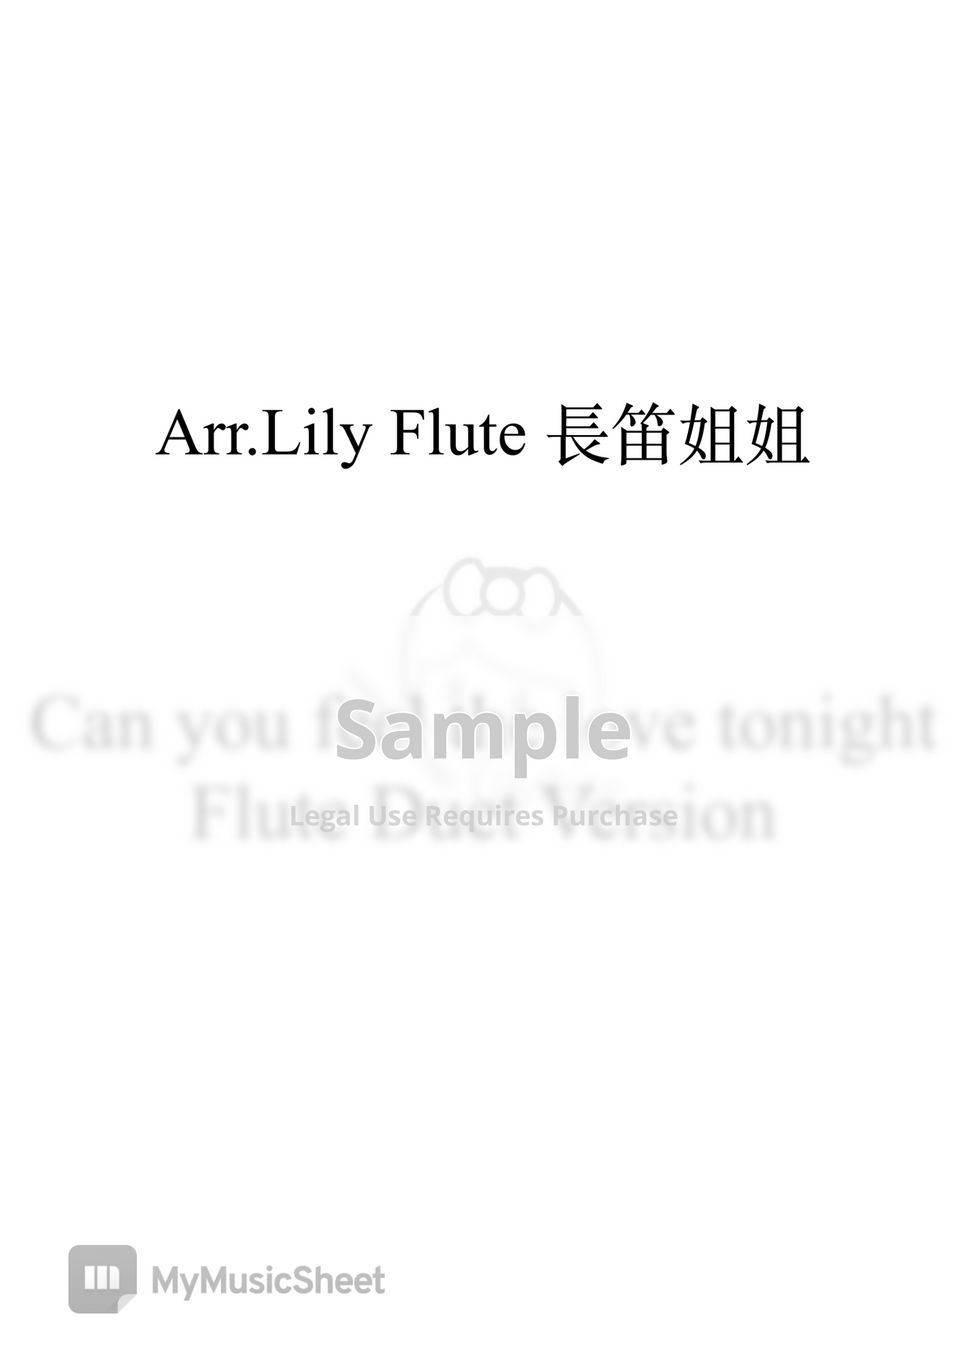 獅子王 - 今晚愛無限Duet version (YT附免費伴奏) by Lily Flute 長笛姐姐